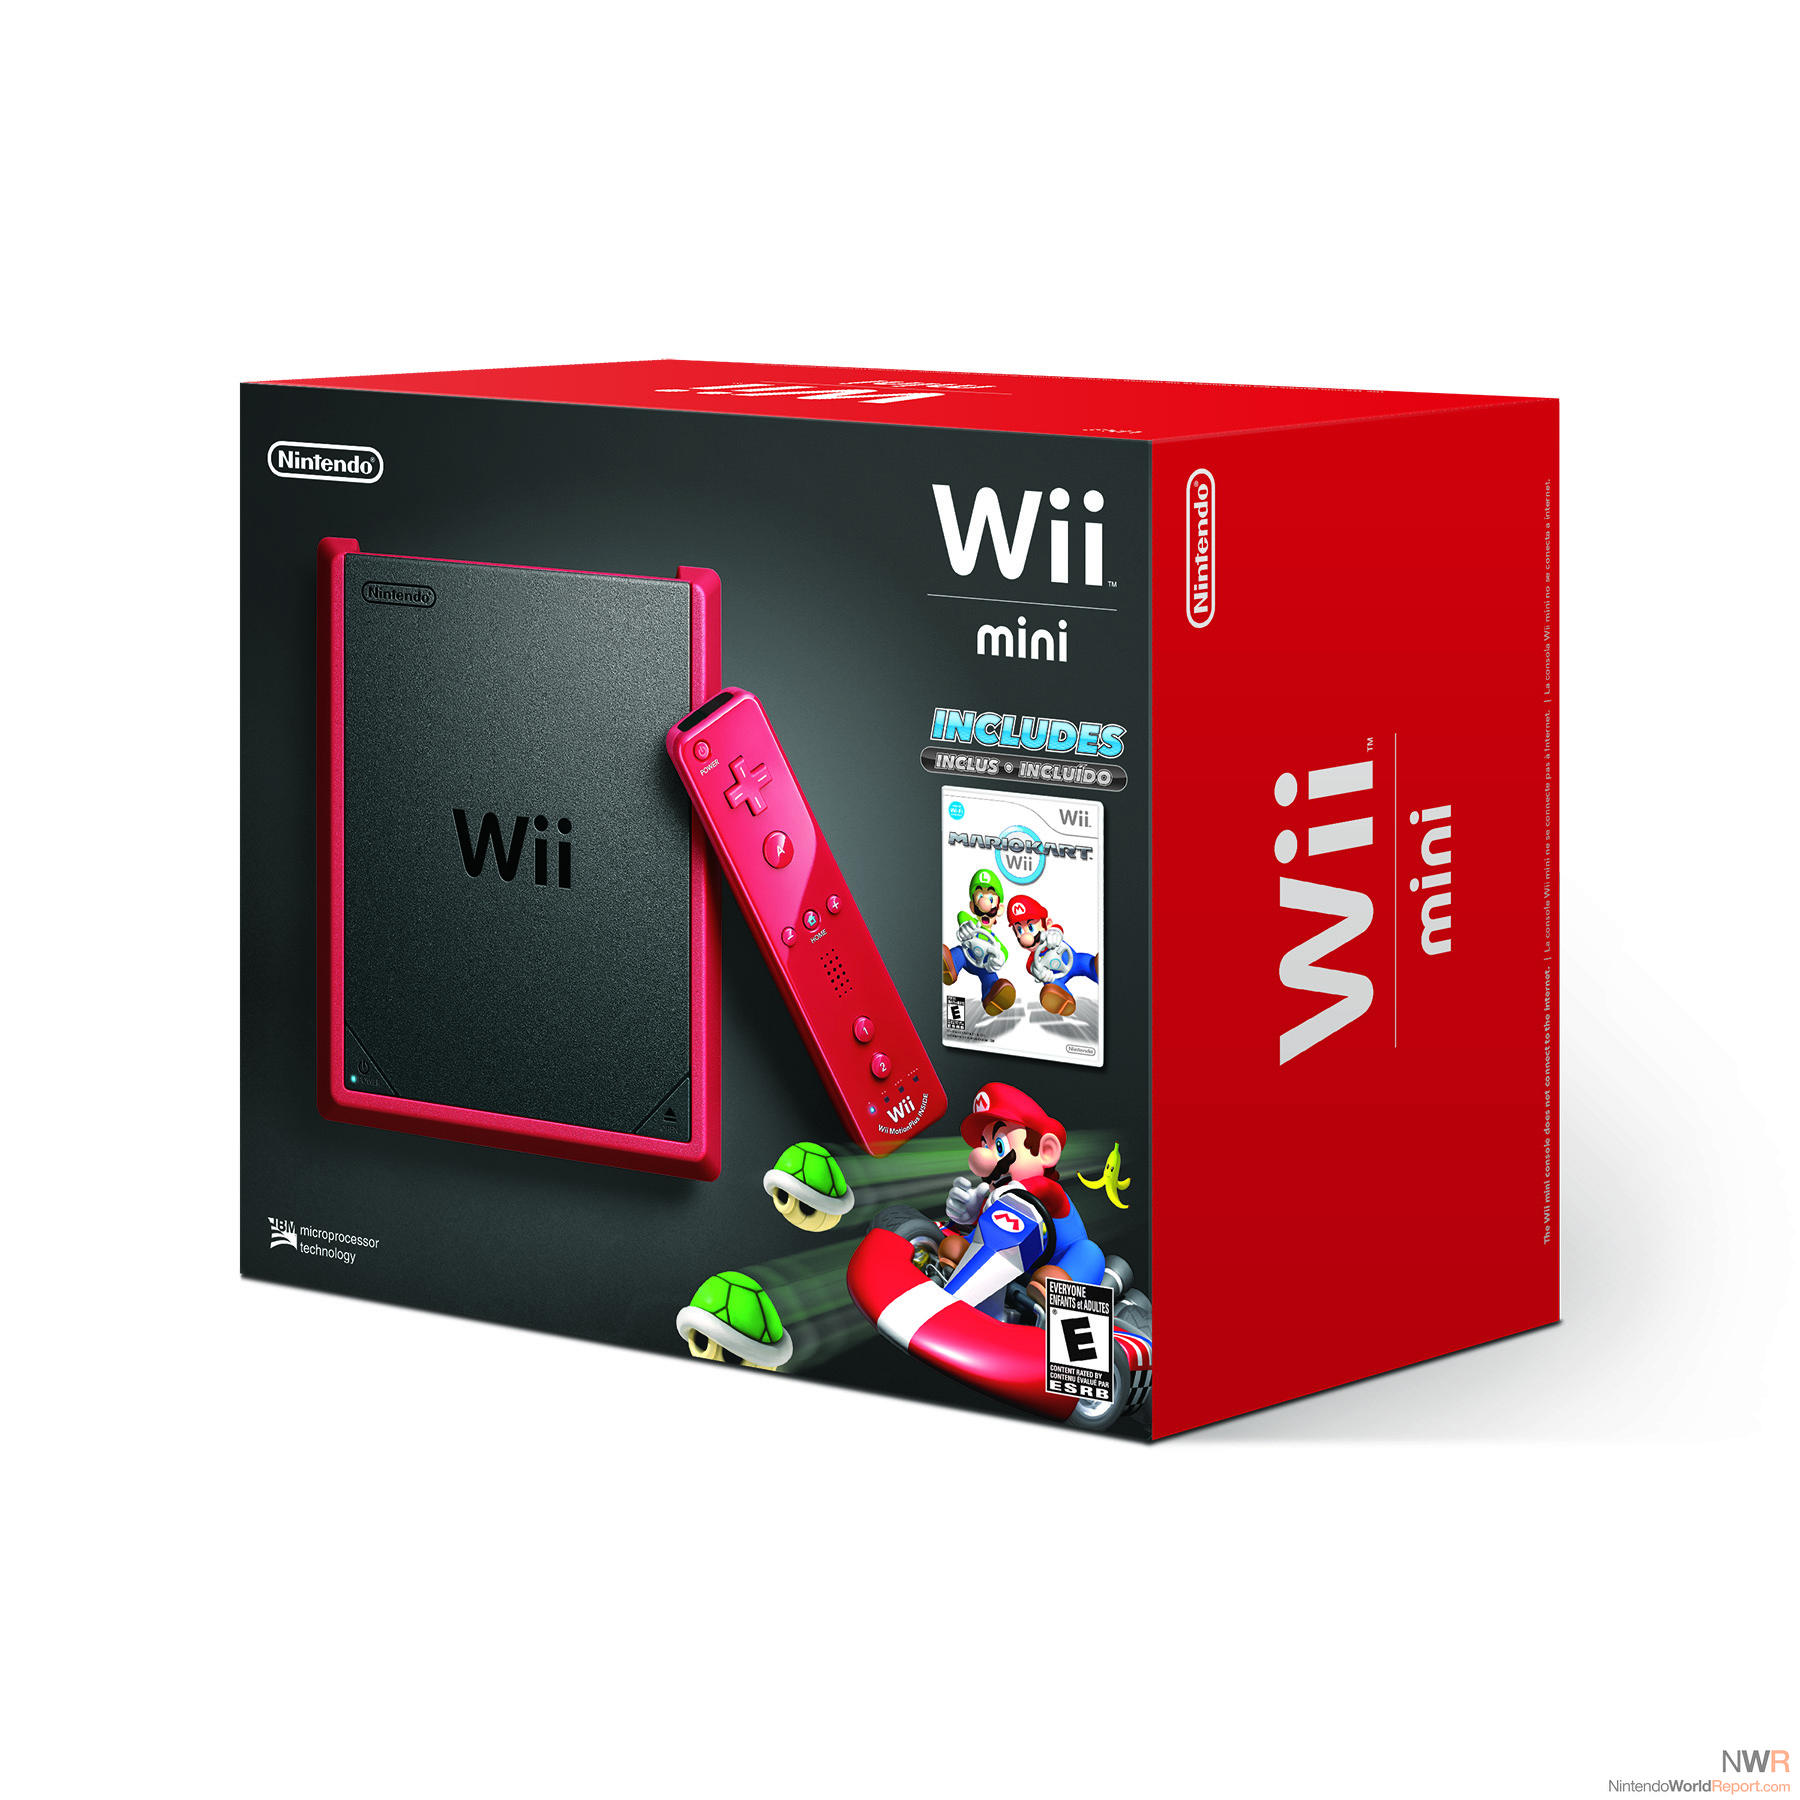 New Super Mario Bros. Wii , Mario Kart & Wii Sports Resort set Wii Japanese  ver